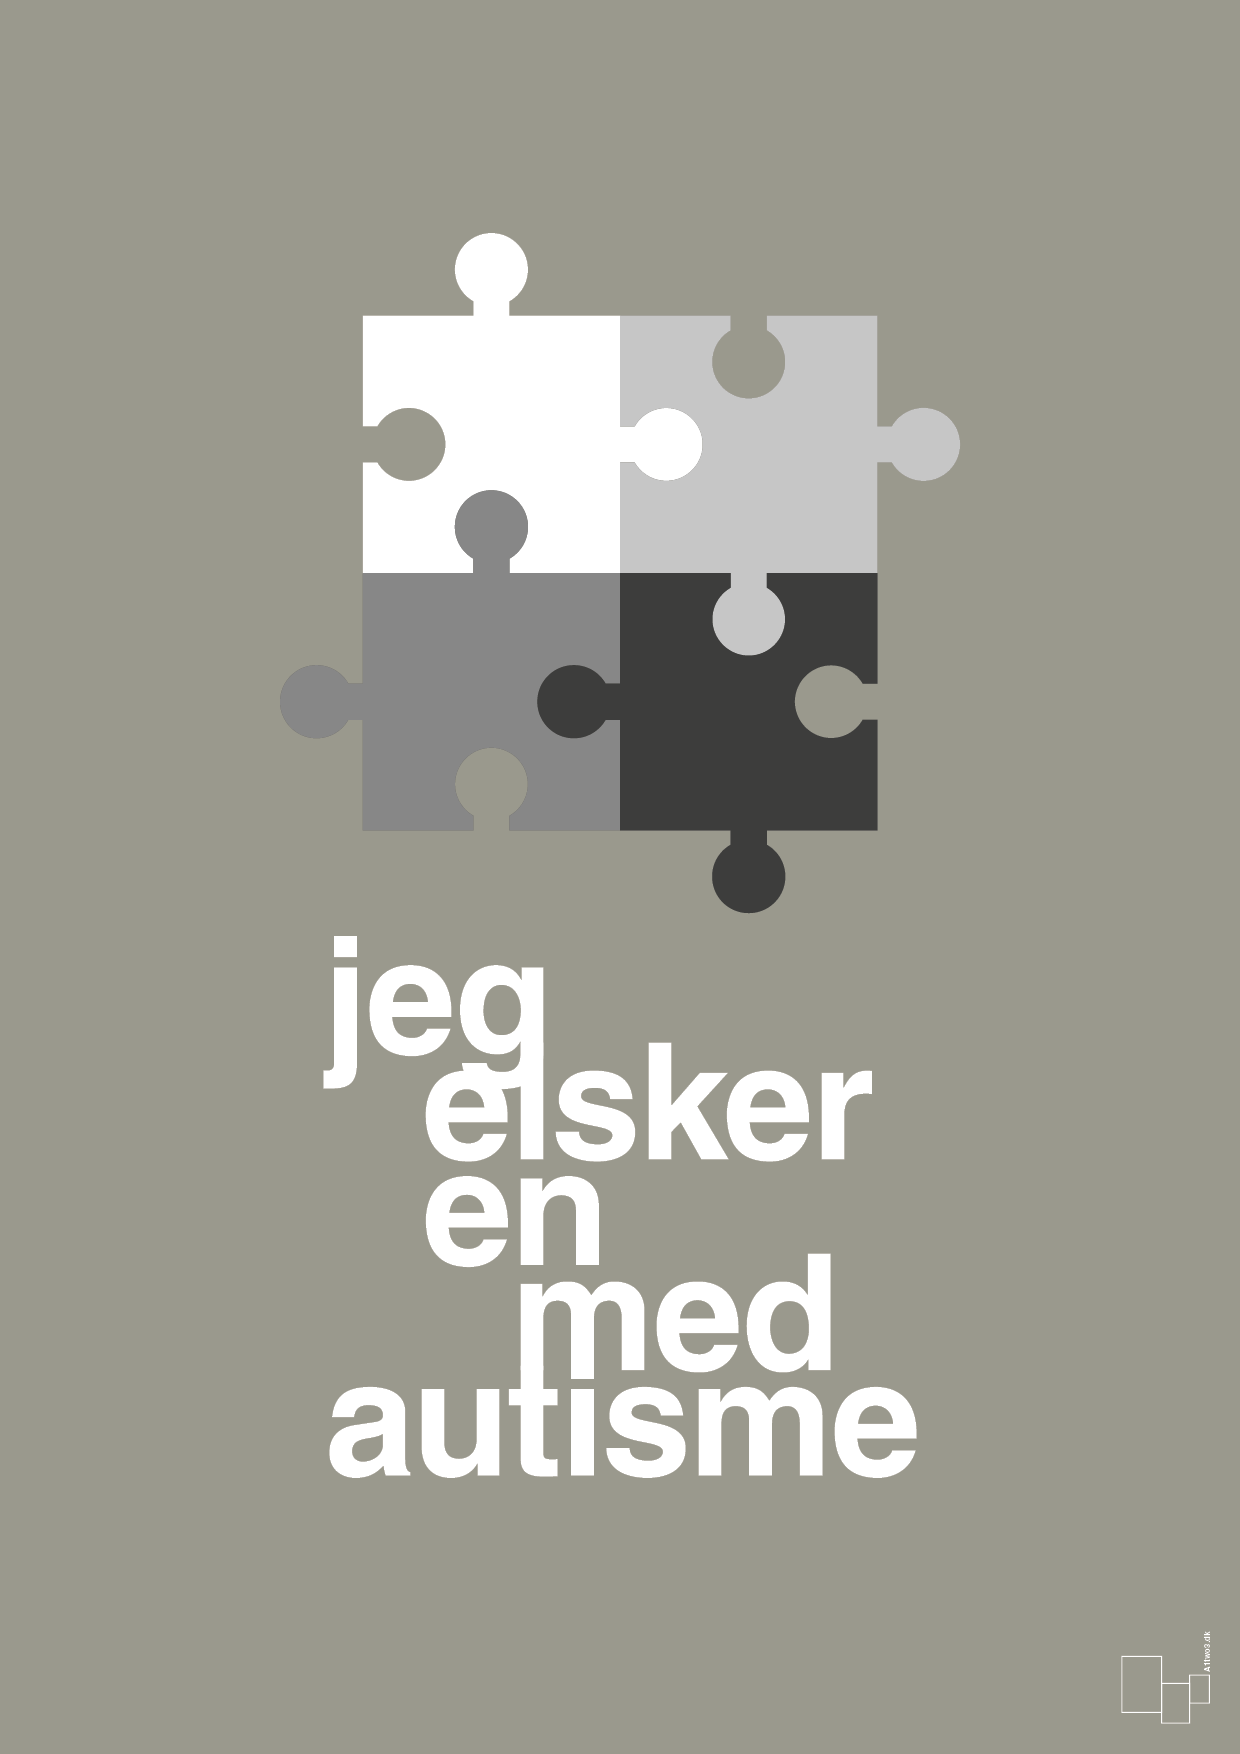 jeg elsker en med autisme - Plakat med Samfund i Battleship Gray